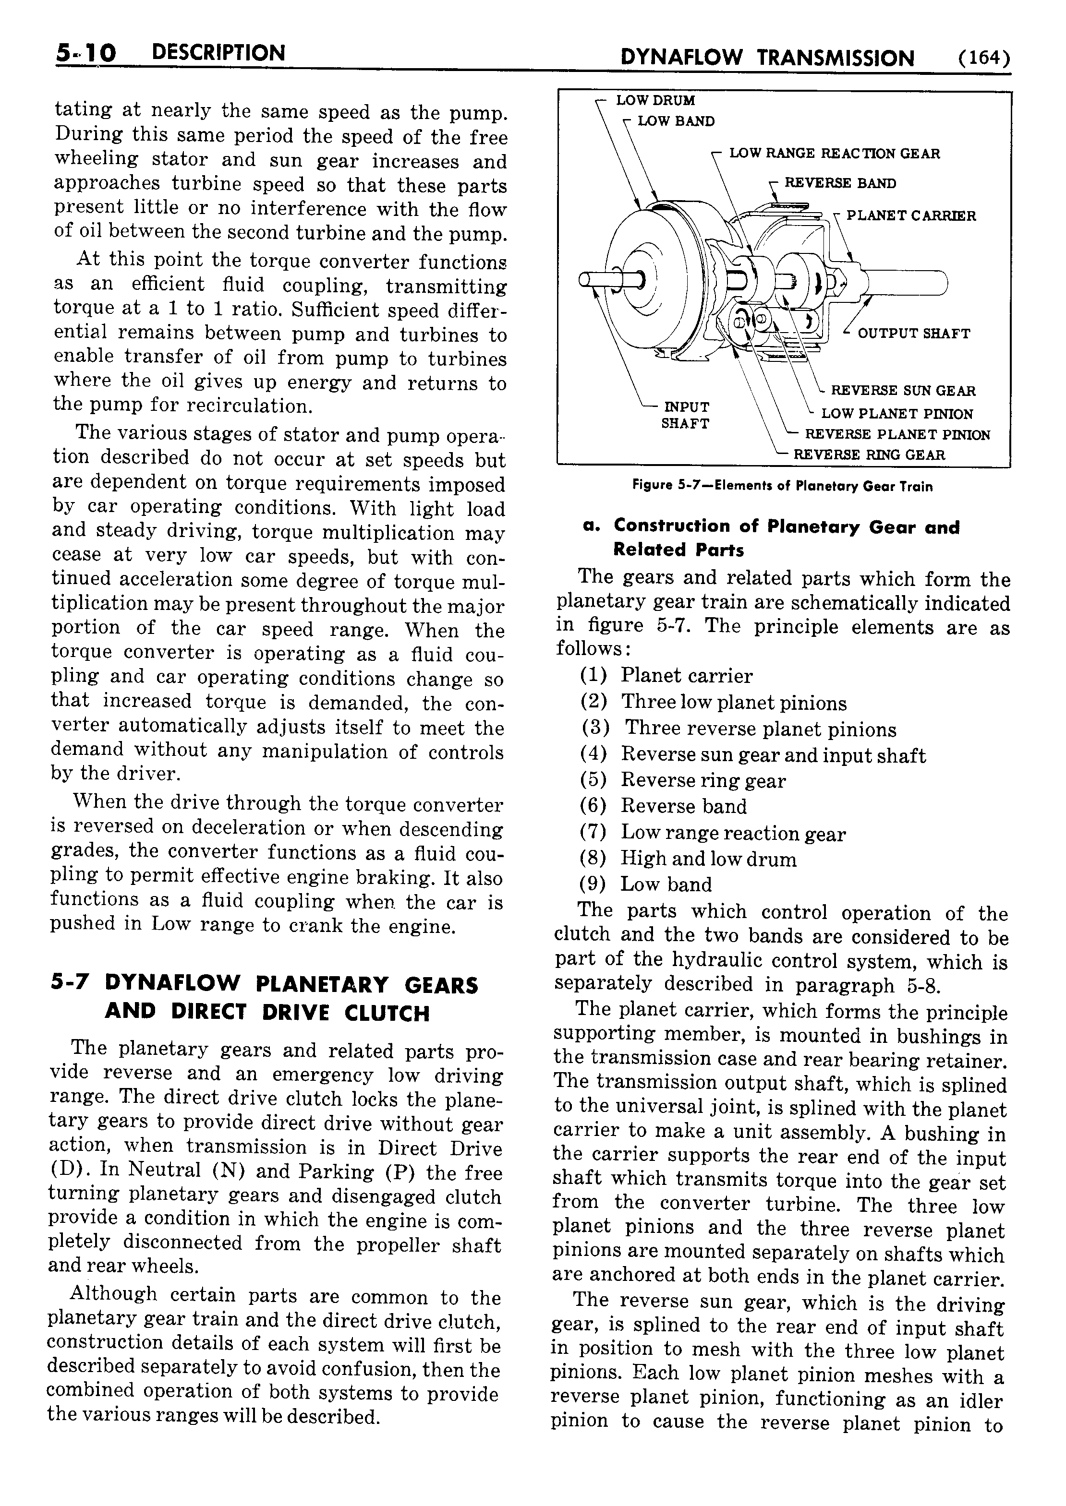 n_06 1954 Buick Shop Manual - Dynaflow-010-010.jpg